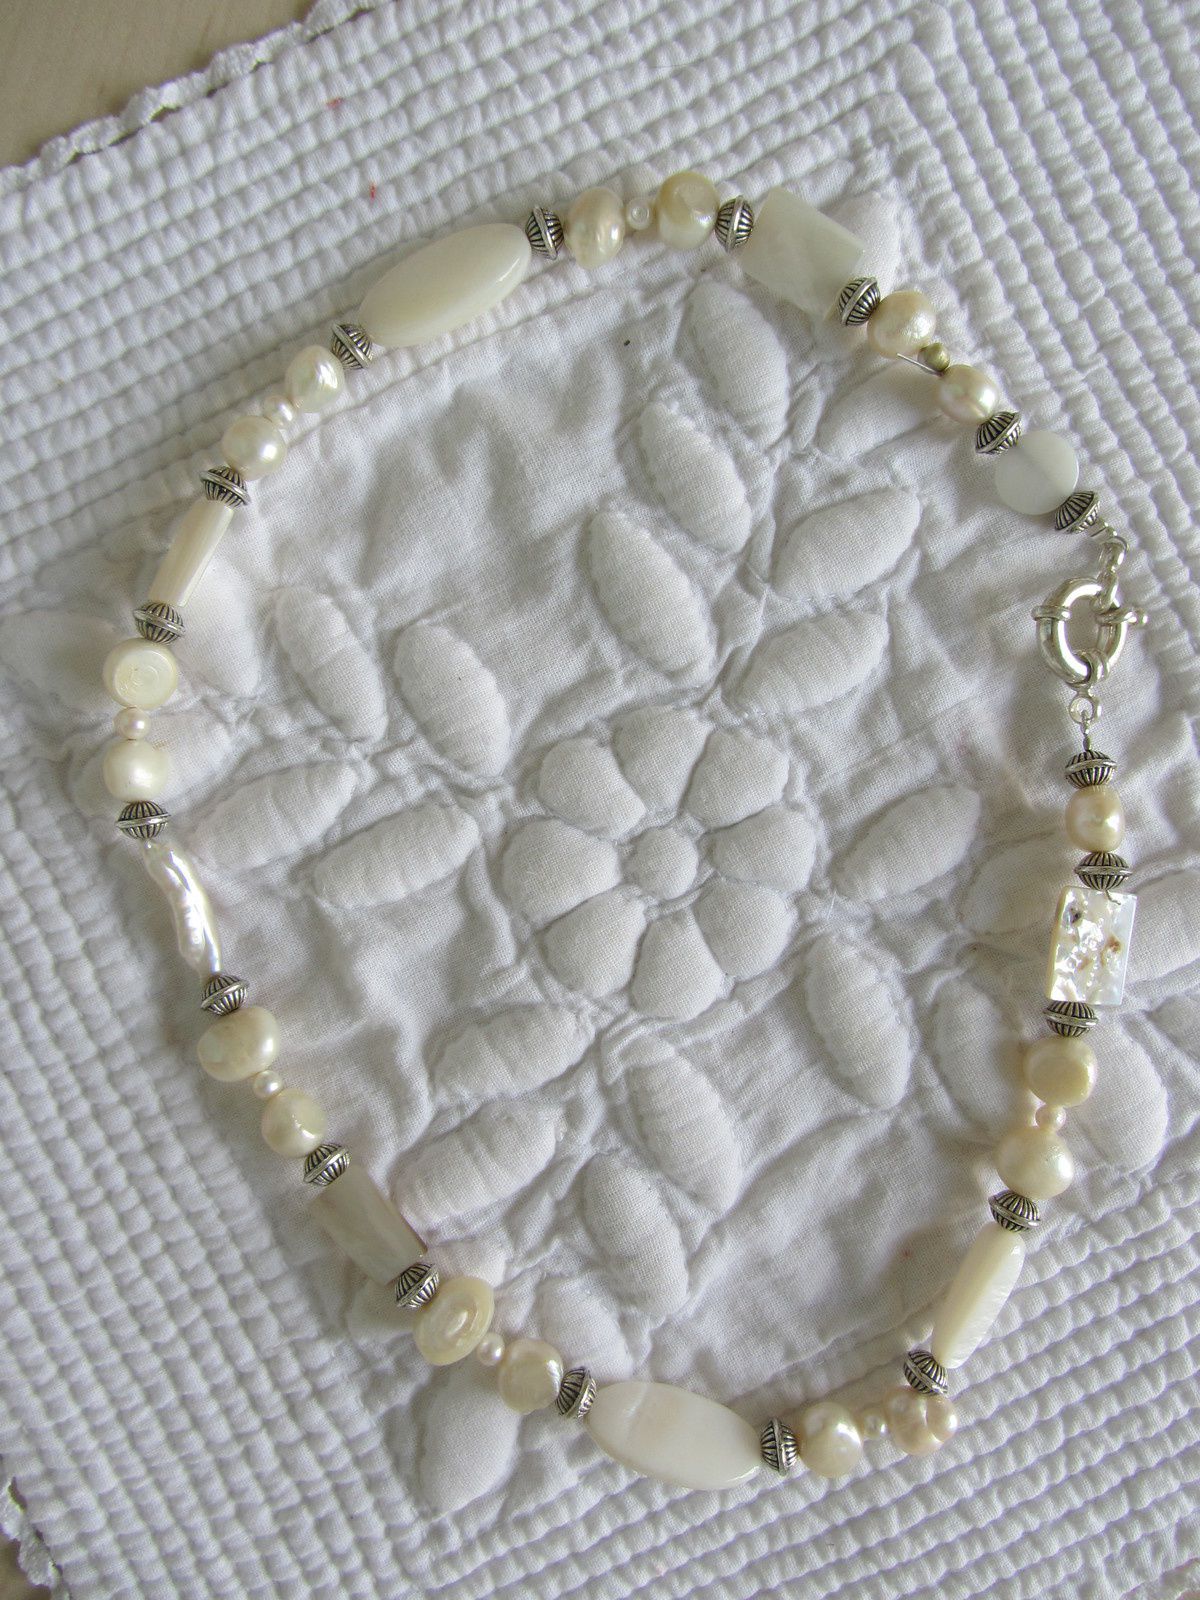 Je fais des cadeaux , colliers, bracelets ...mais une fois que les boites de perles sont sorties, j'aime aussi me faire des colliers. J'adore la nacre. Je me suis donc fait ce petit collier très élégant.